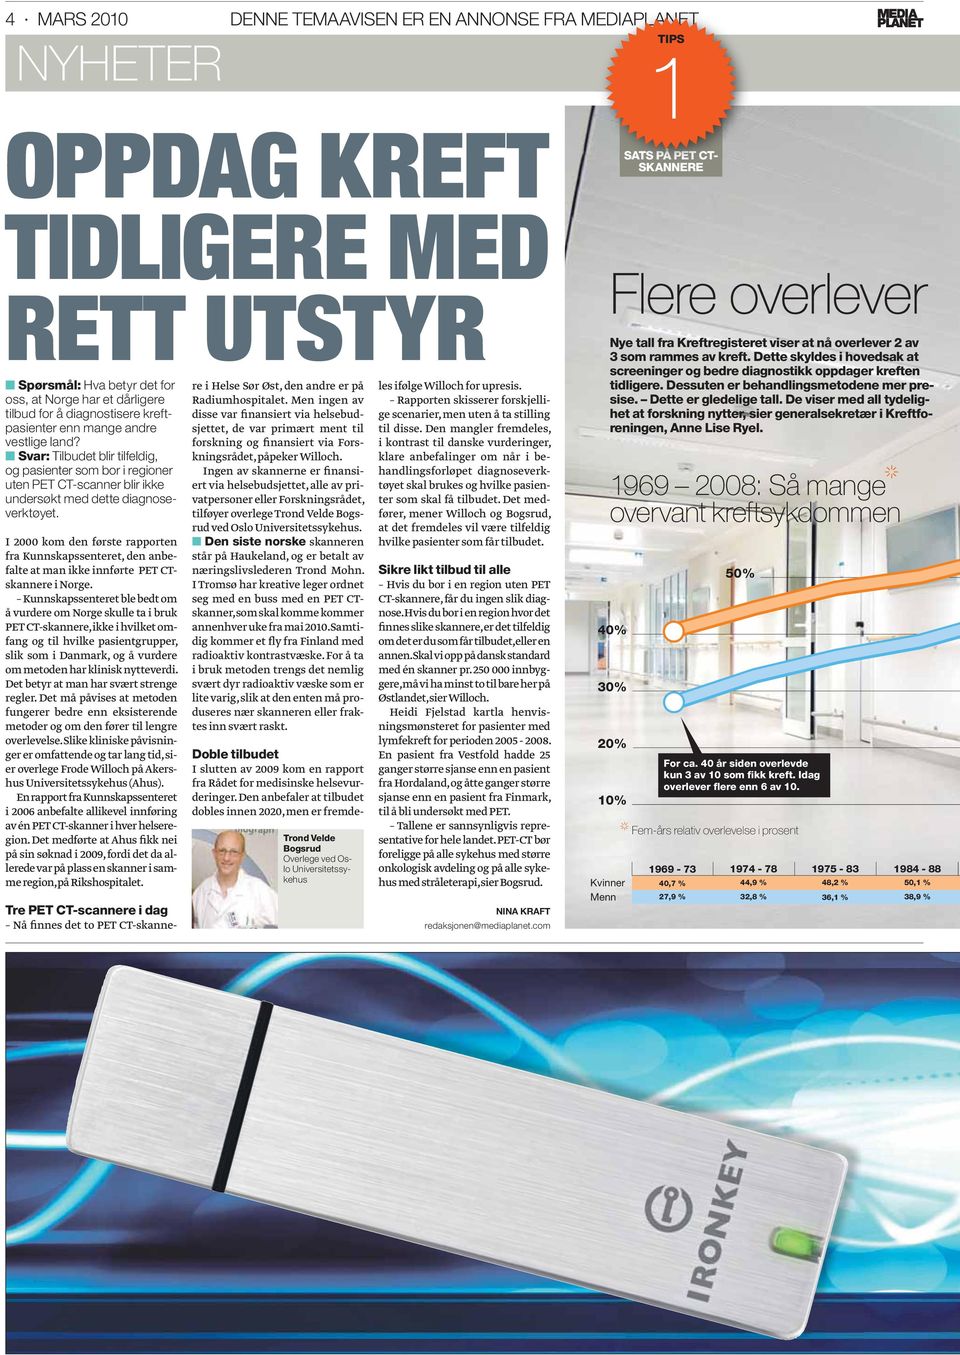 I 2000 kom den første rapporten fra Kunnskapssenteret, den anbefalte at man ikke innførte PET CTskannere i Norge.